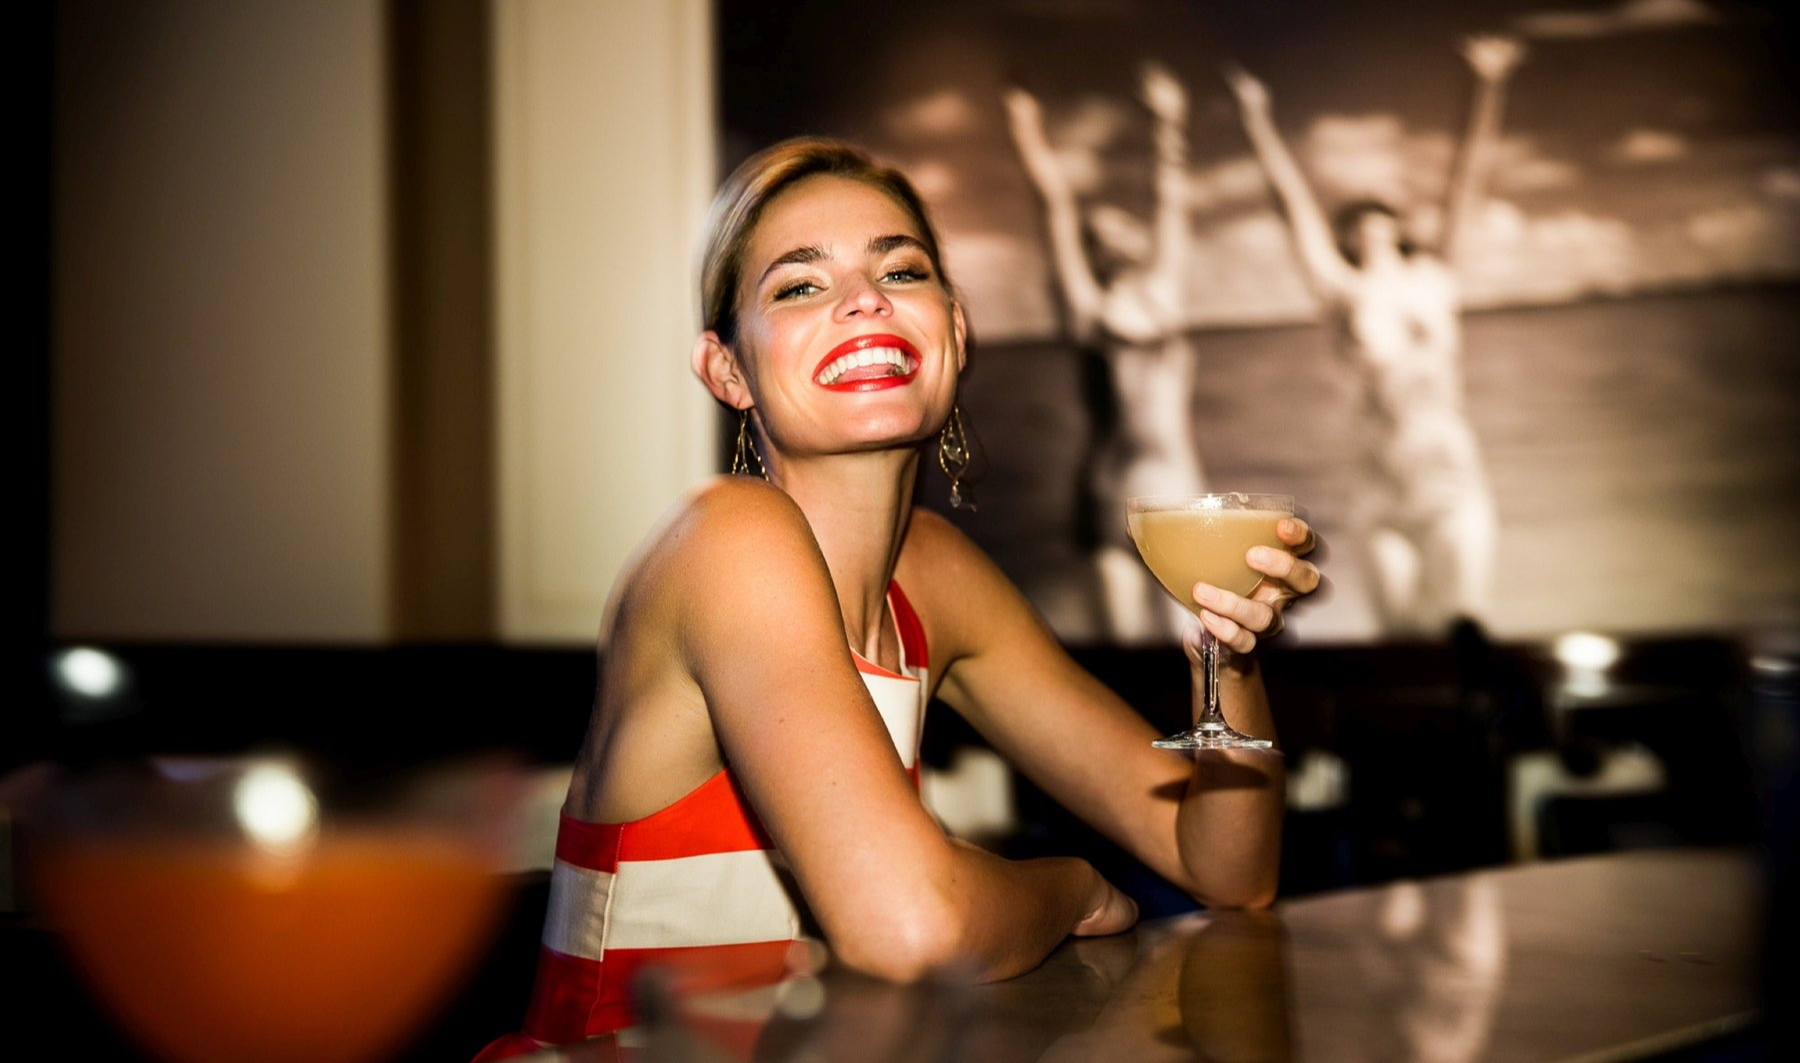 Lady enjoying the cocktail at the bar at Diplomat Beach